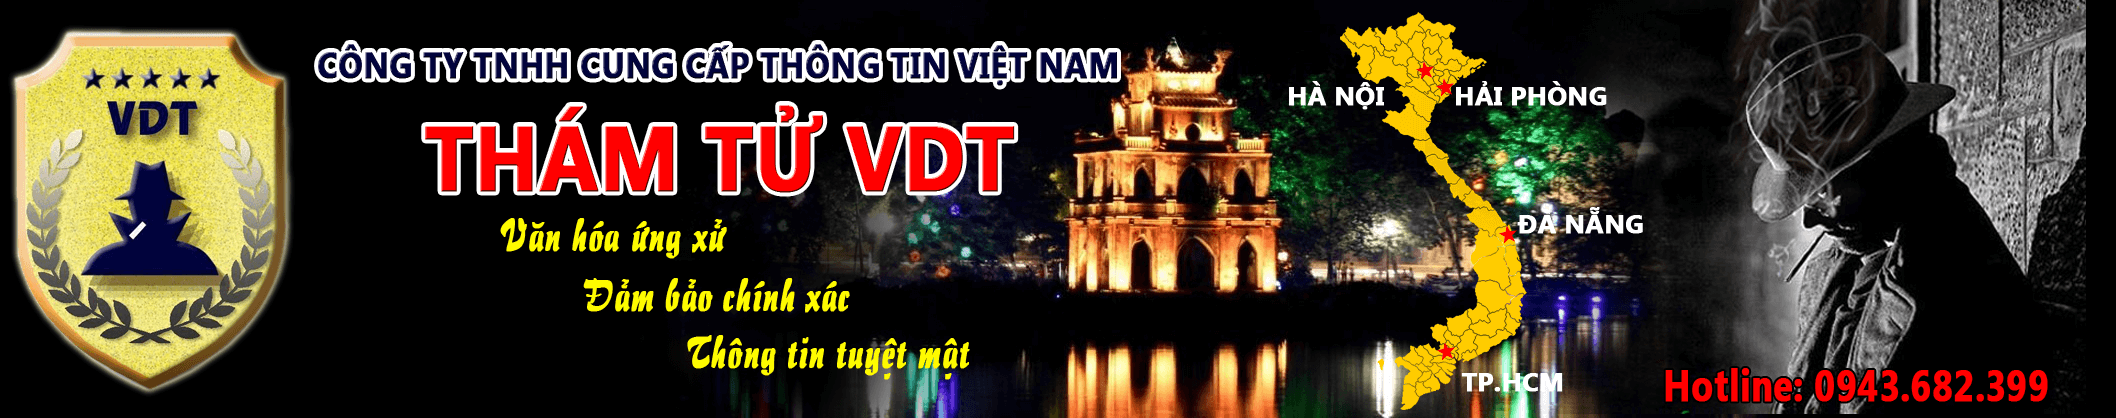 Dịch Vụ Thám Tử Quận Long Biên Hà Nội